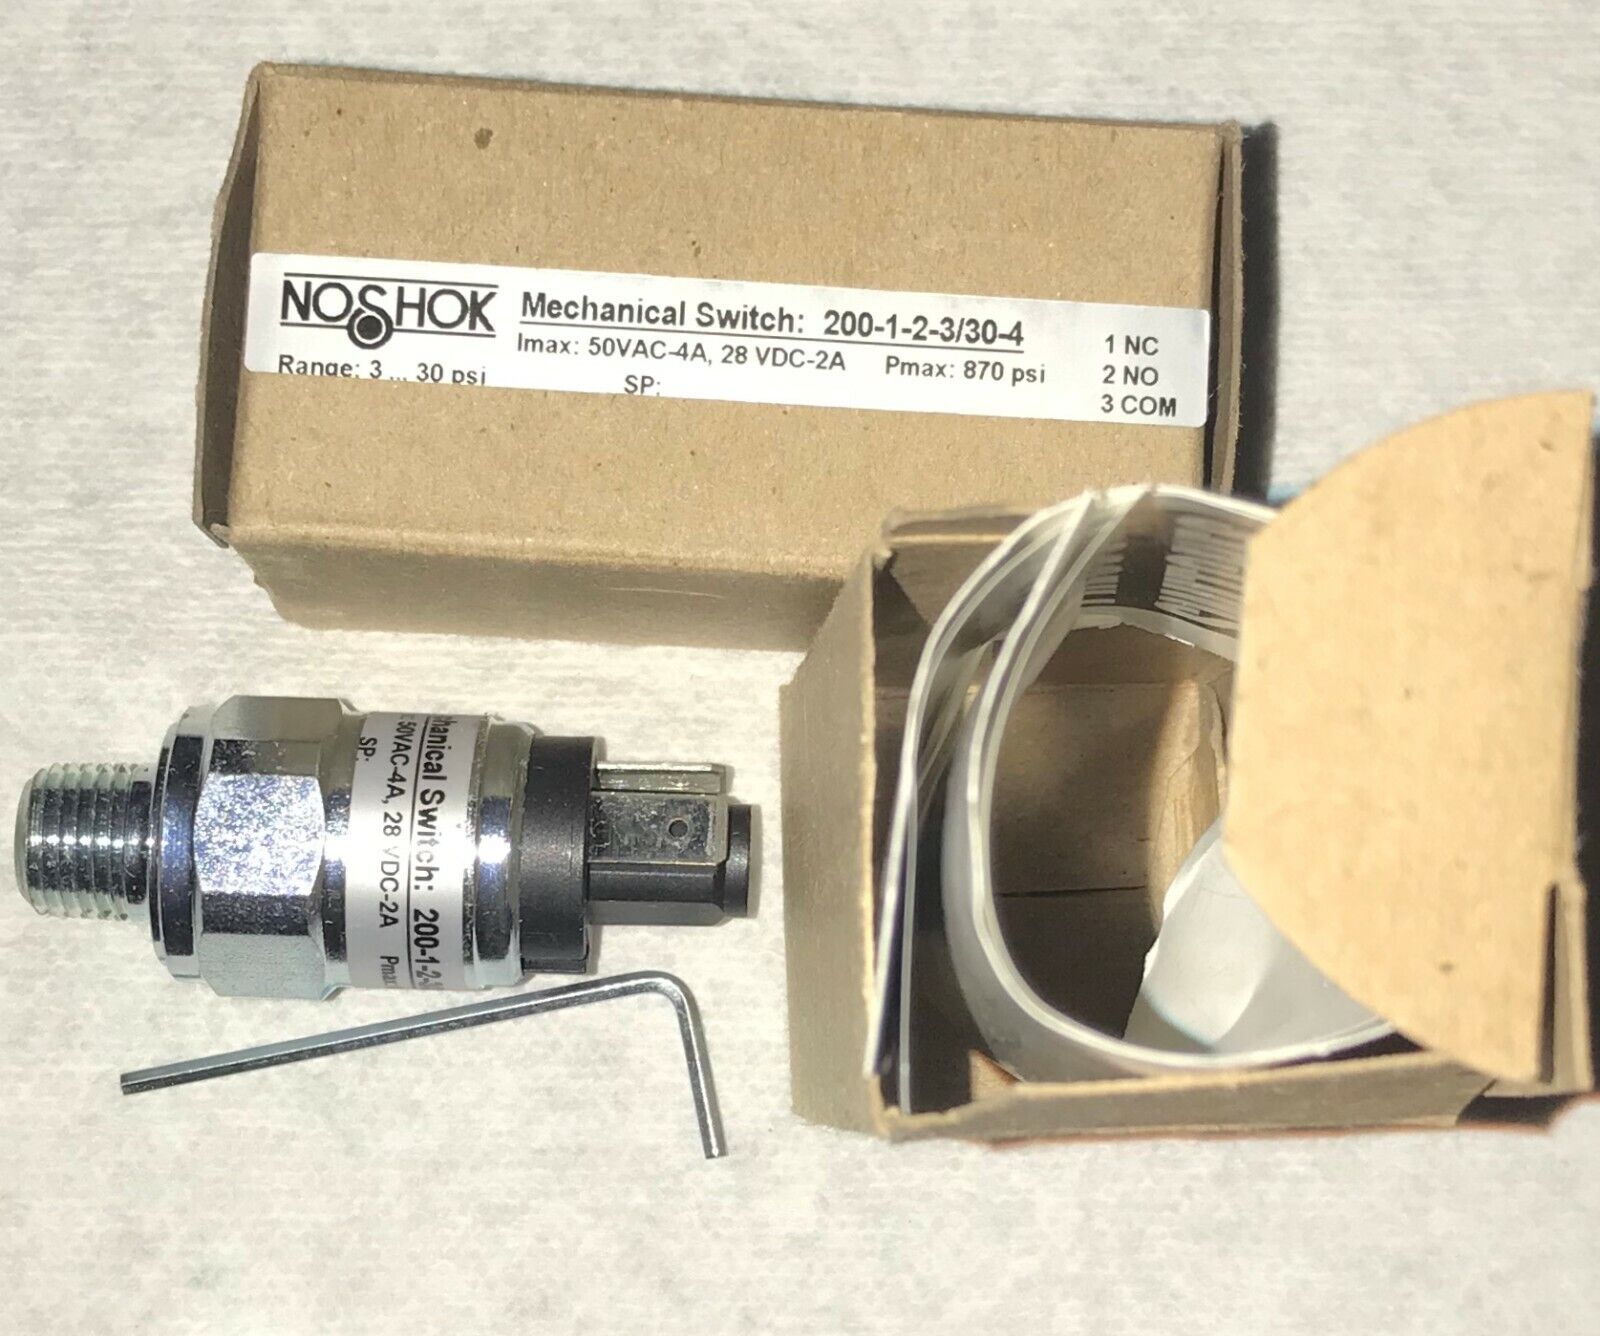 NOSHOK 200-1-2-3/30-4 Pressure Switch, 3 - 30 Psig, Spdt.